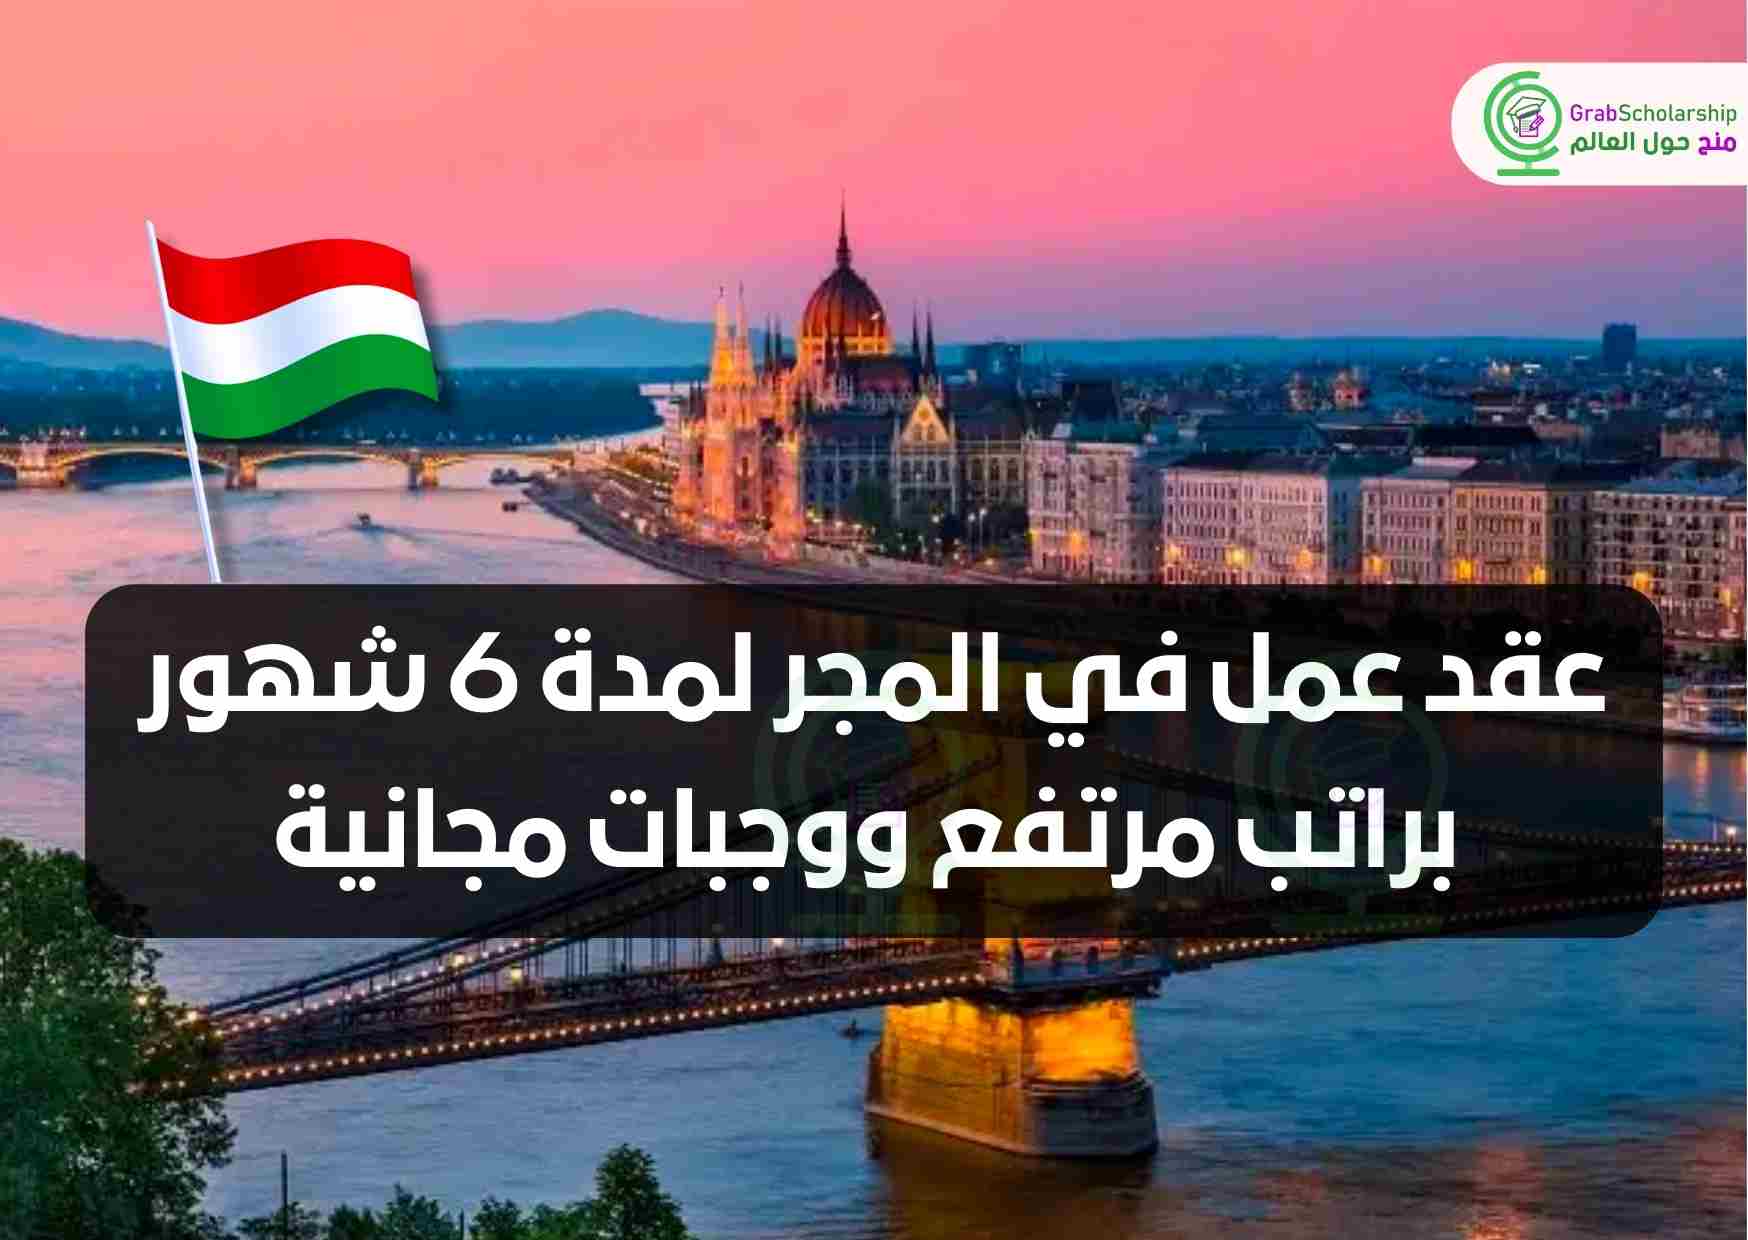 عقد عمل في المجر لمدة 6 شهور براتب مرتفع ووجبات مجانية